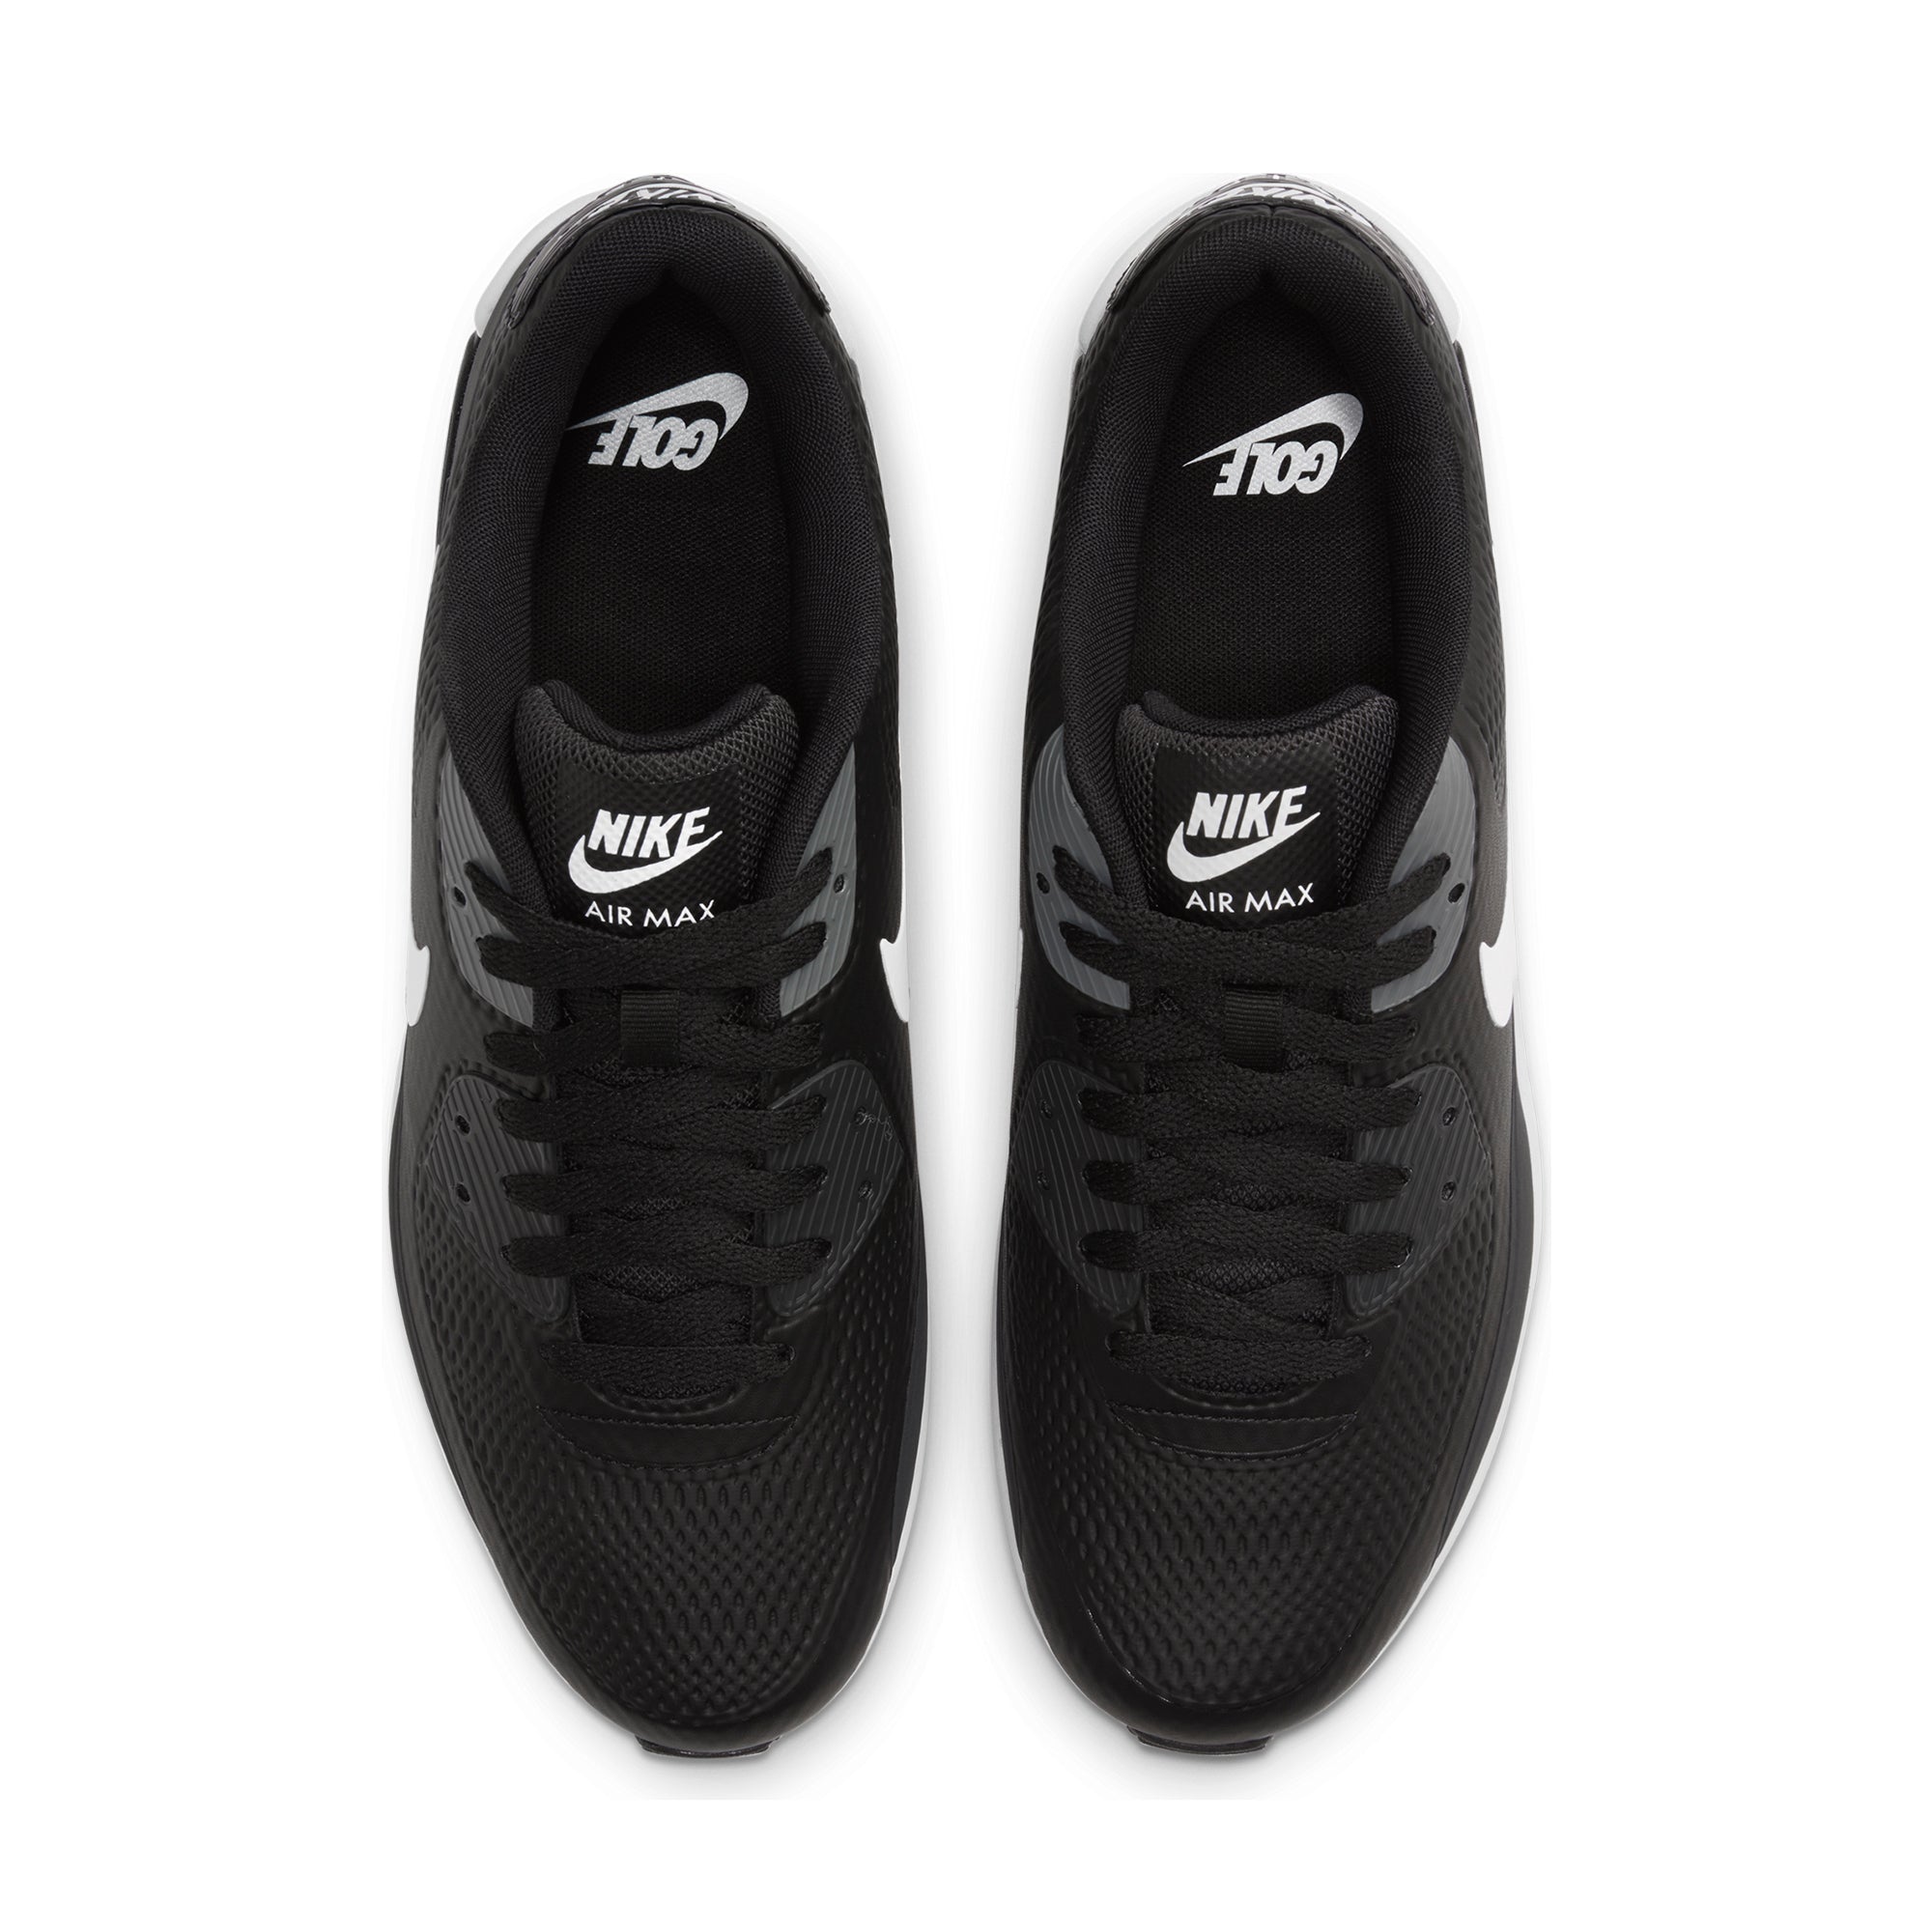 Nike Golf Air Max 90 G Shoes